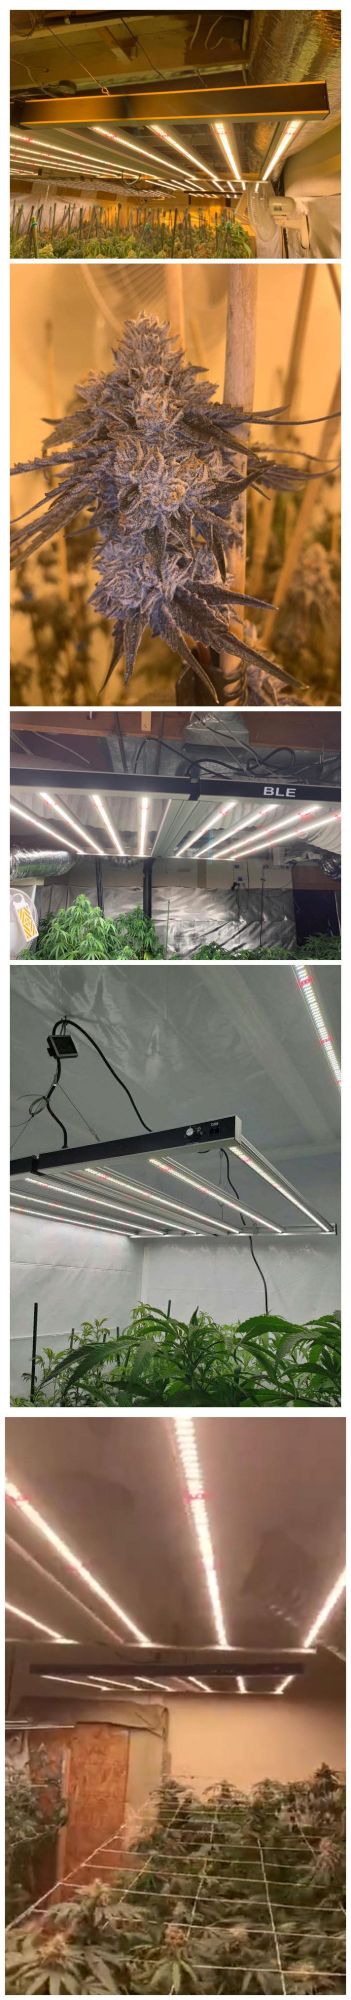 BLE New Design Vertical Farm Full Spectrum LED Plant Growing Light Bars 880W Samsung 301b LED for Indoor Grow